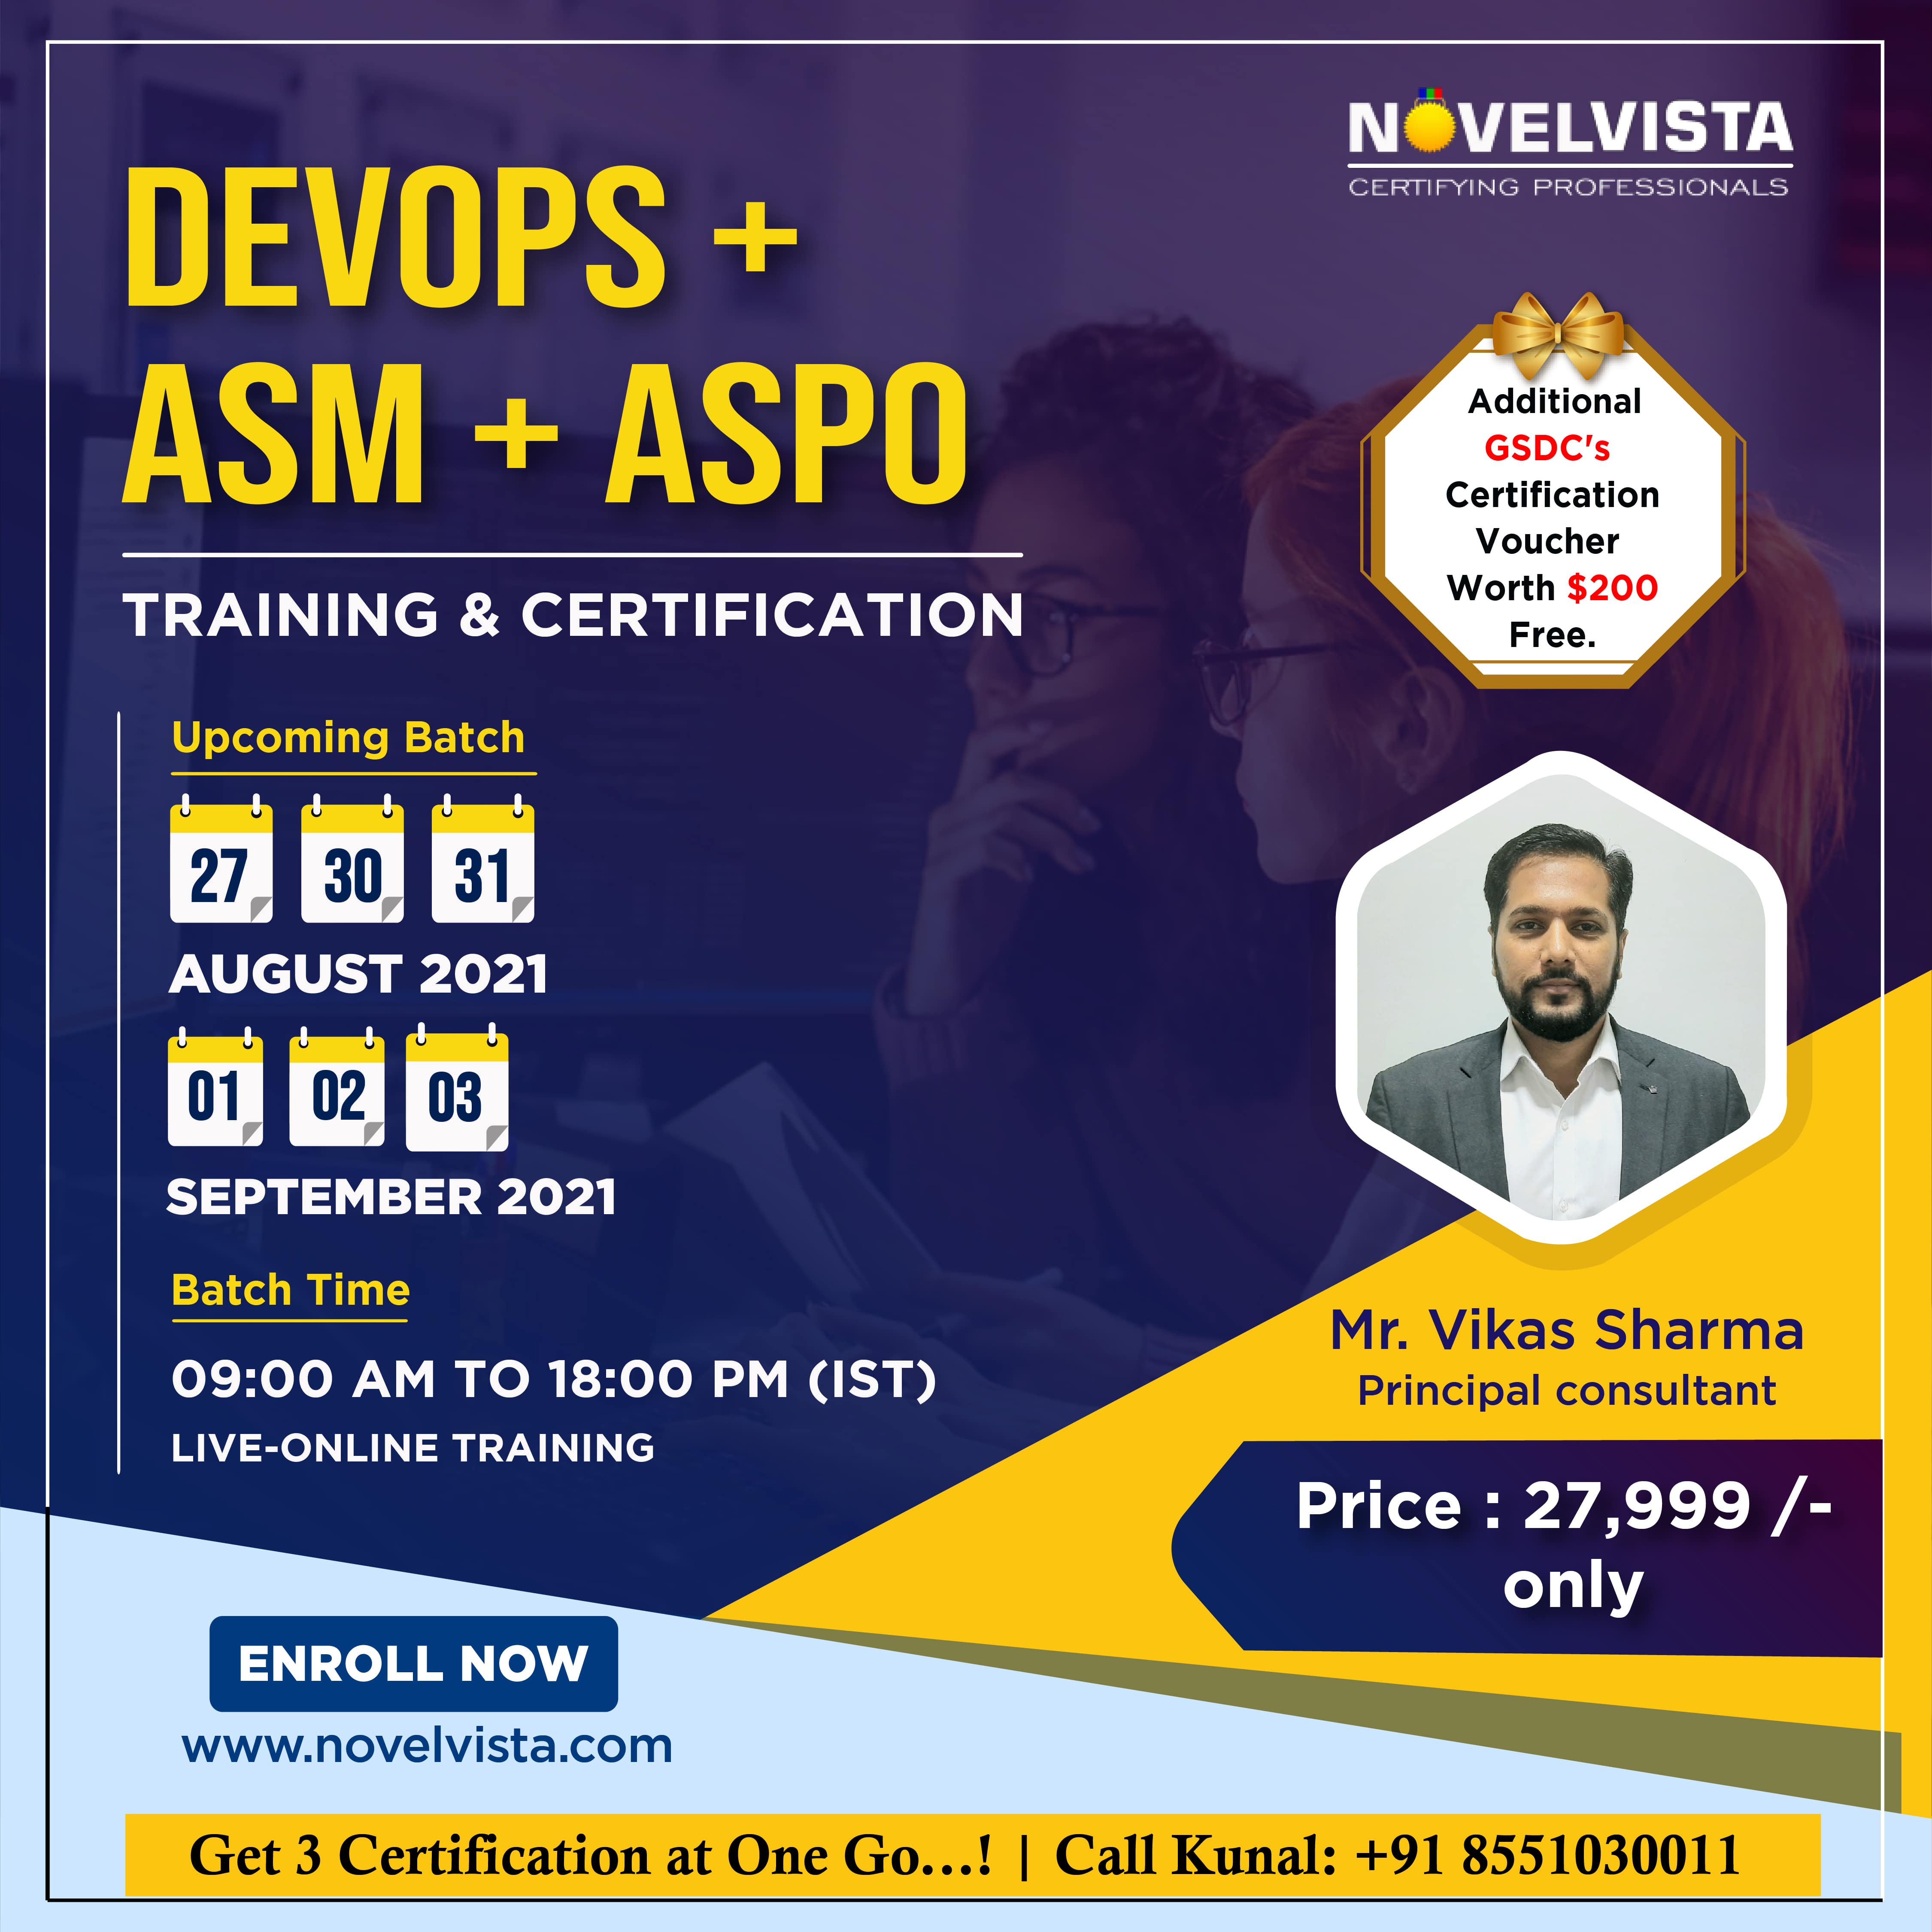 Register Now For Our Best DevOps + ASM + CASPO Combo Training & Certification Program., Mumbai, Maharashtra, India